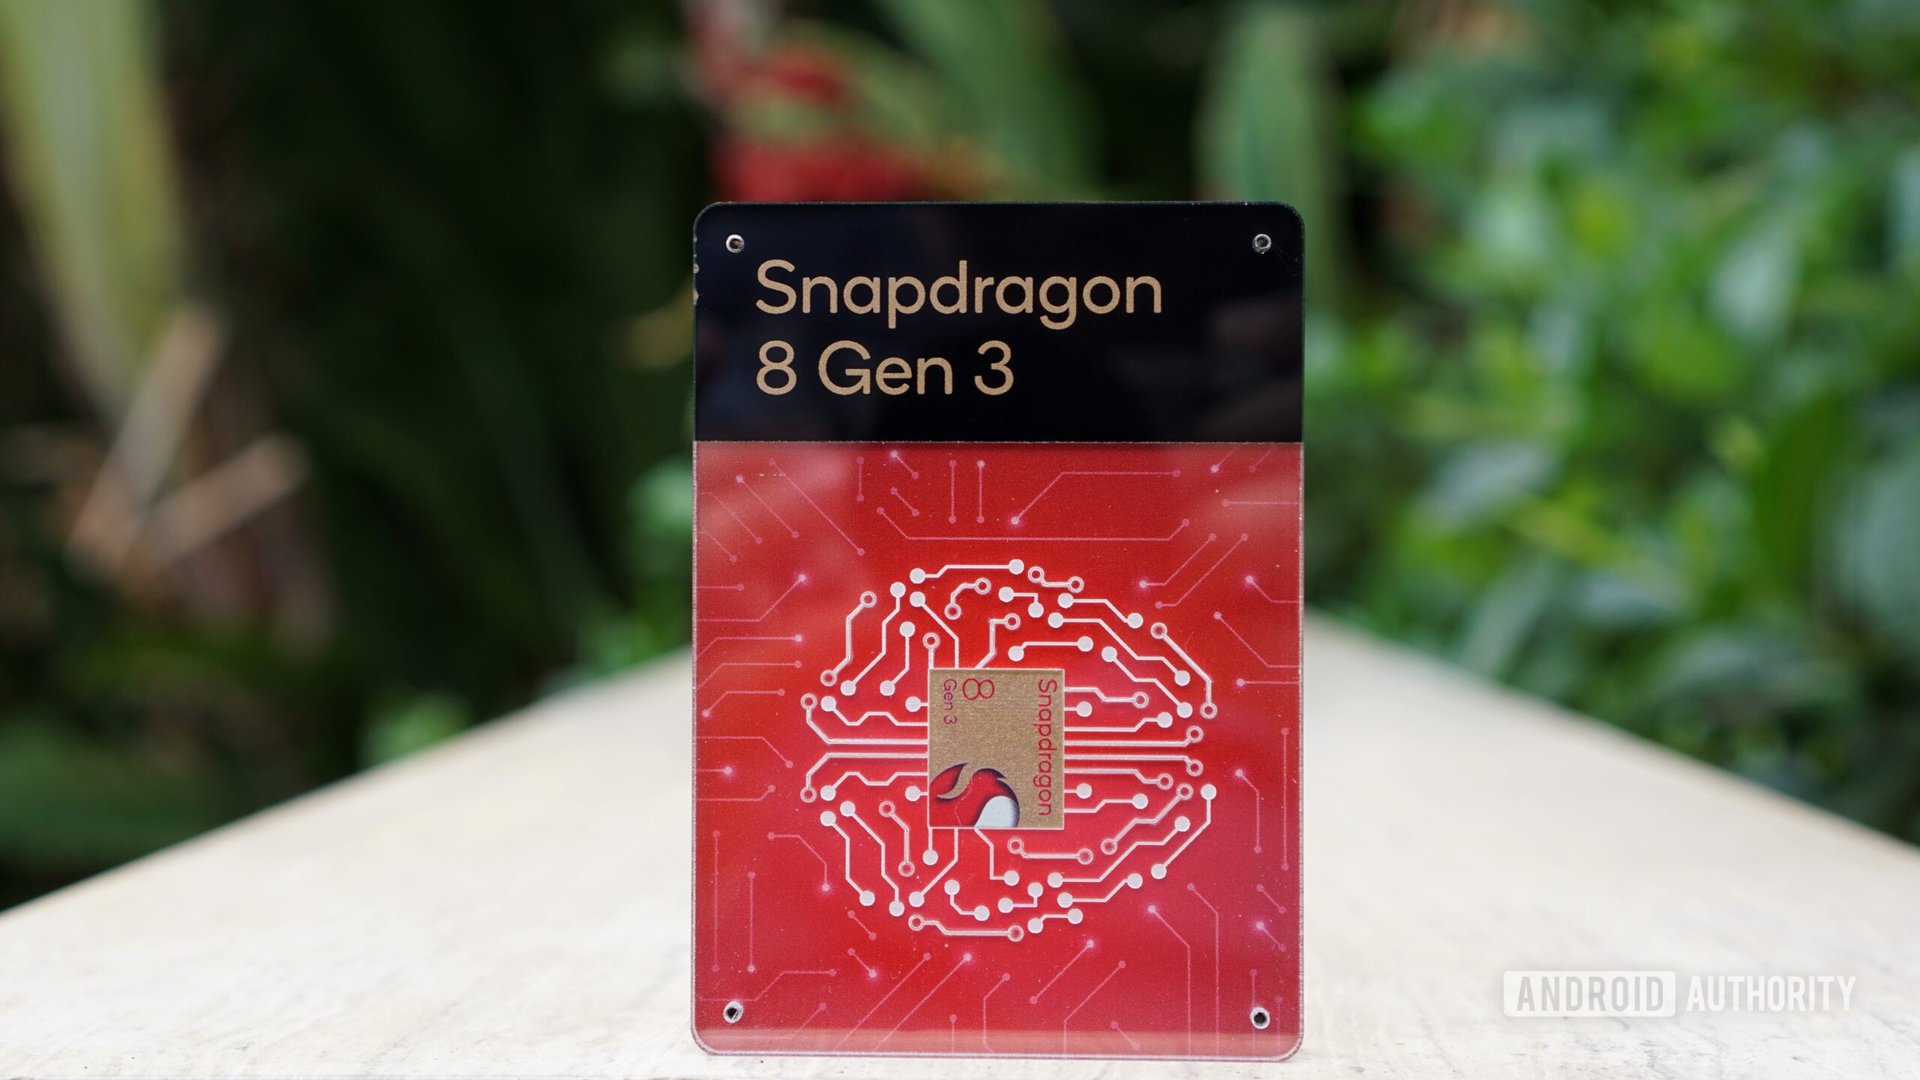 The Snapdragon 8 Gen 3 dummy chip.